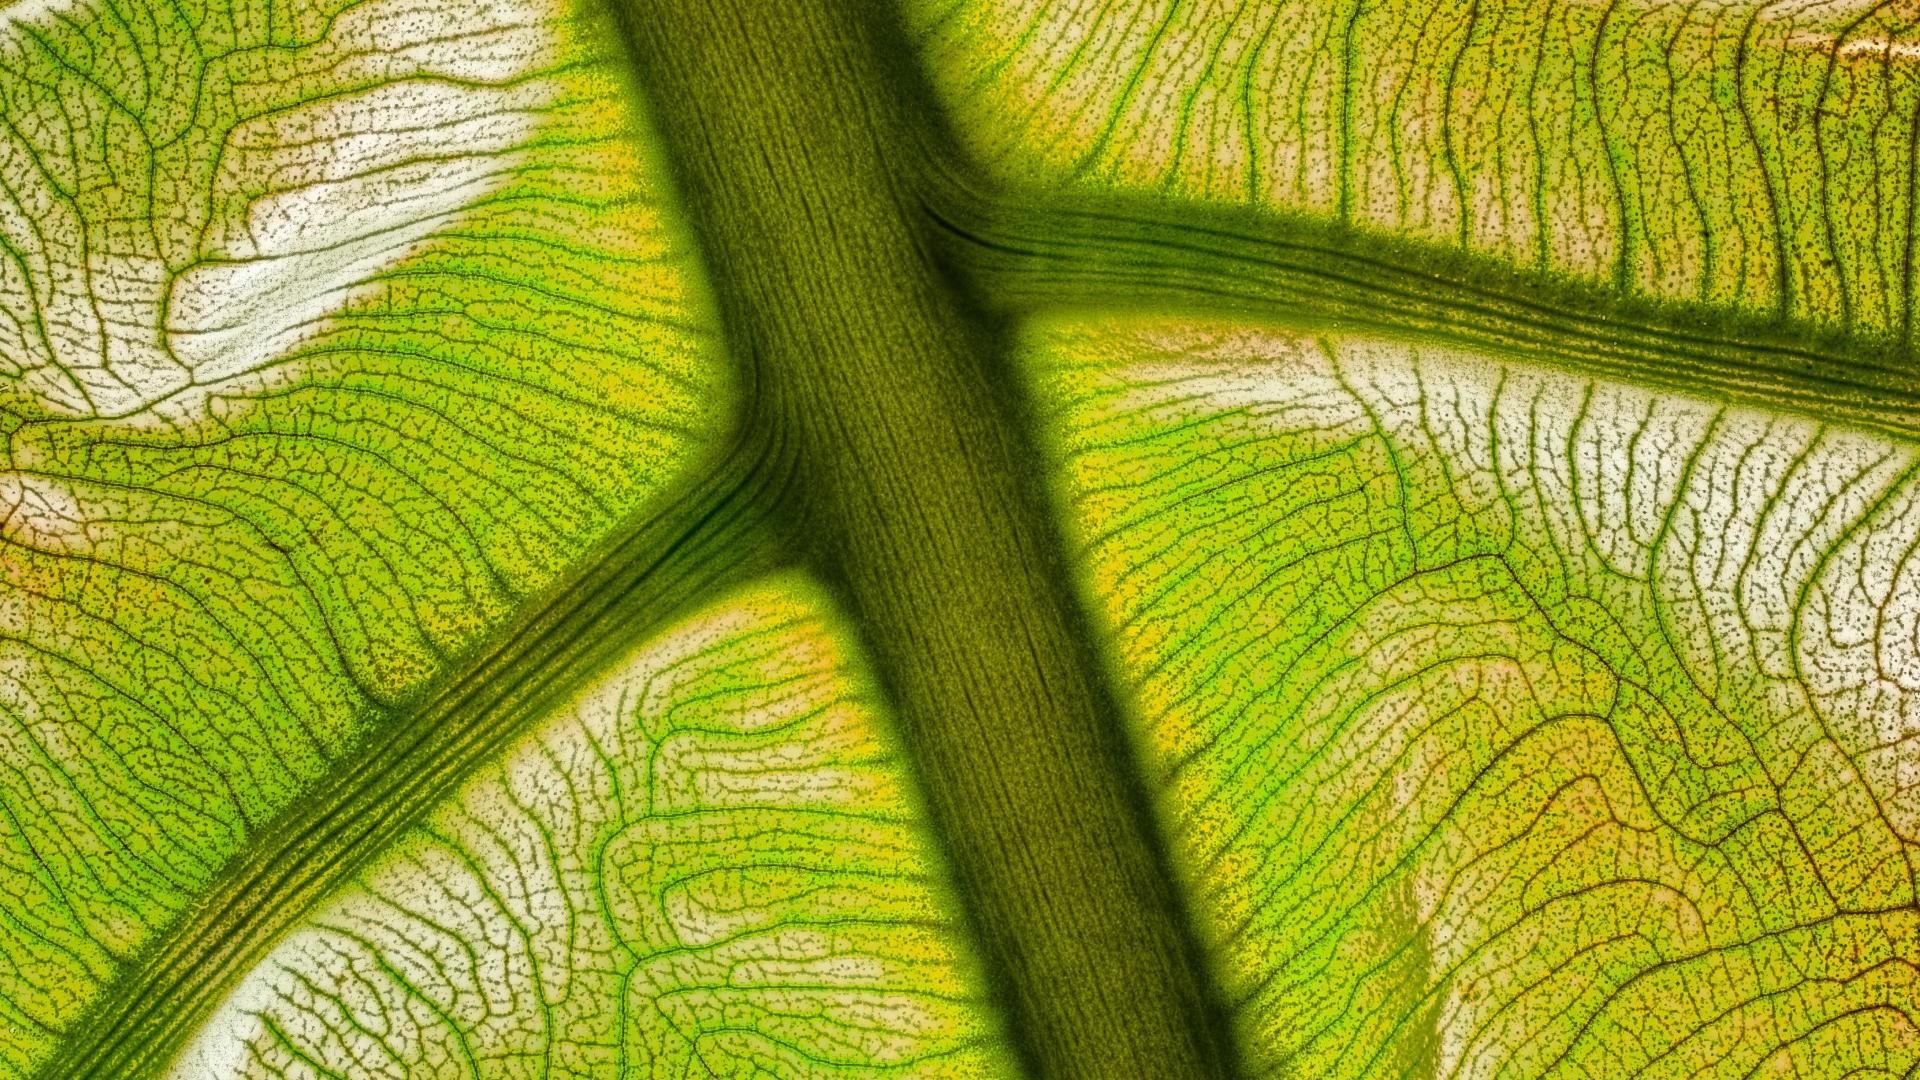 Рассмотрите электронные фотографии поверхности листьев растений как